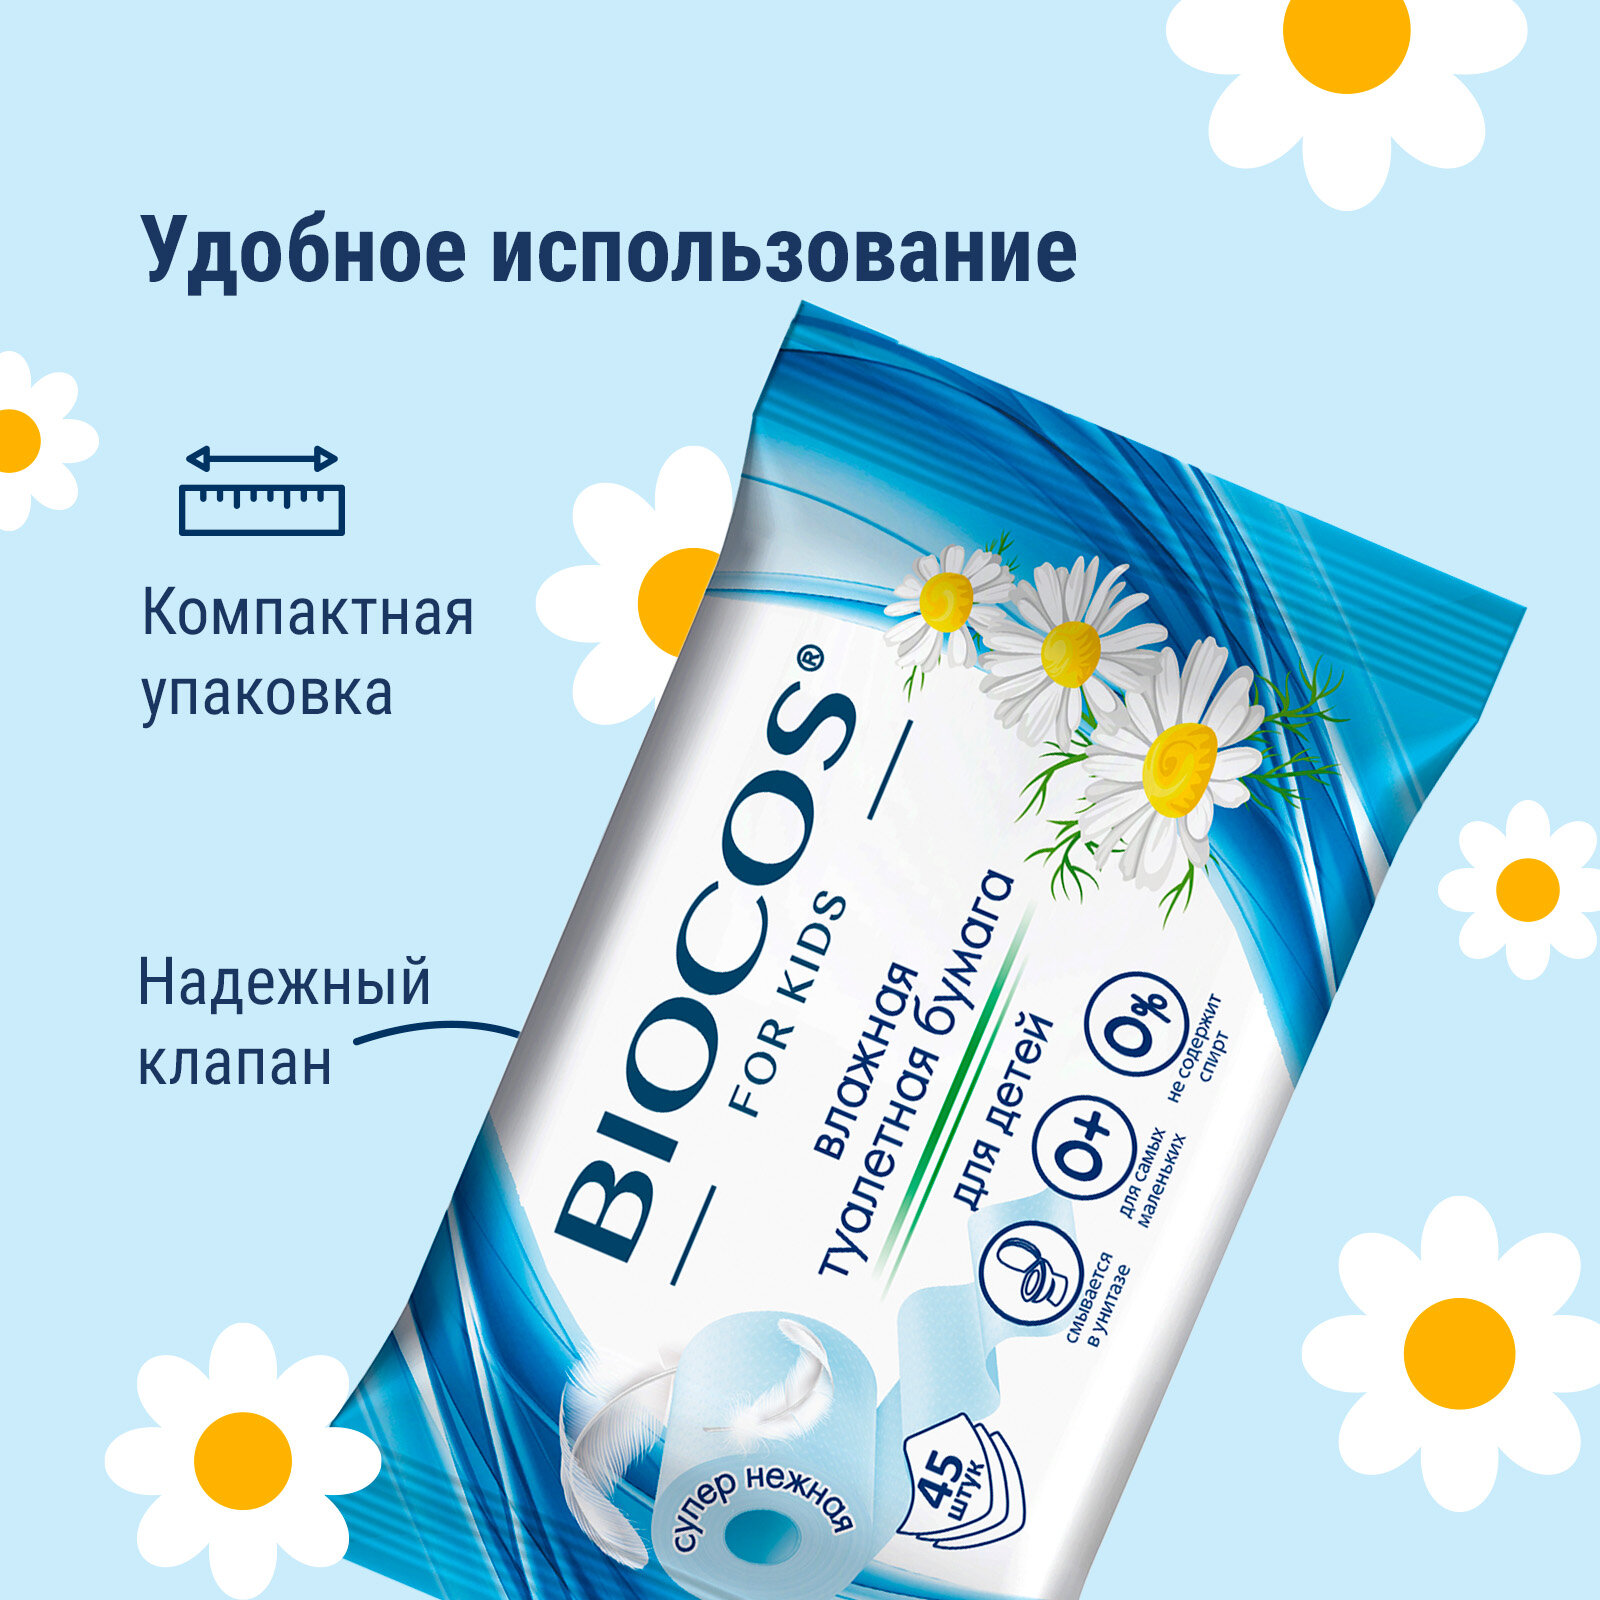 Влажная туалетная бумага Biocos детская, смываемая для интимной гигиены малышей, набор 90 шт